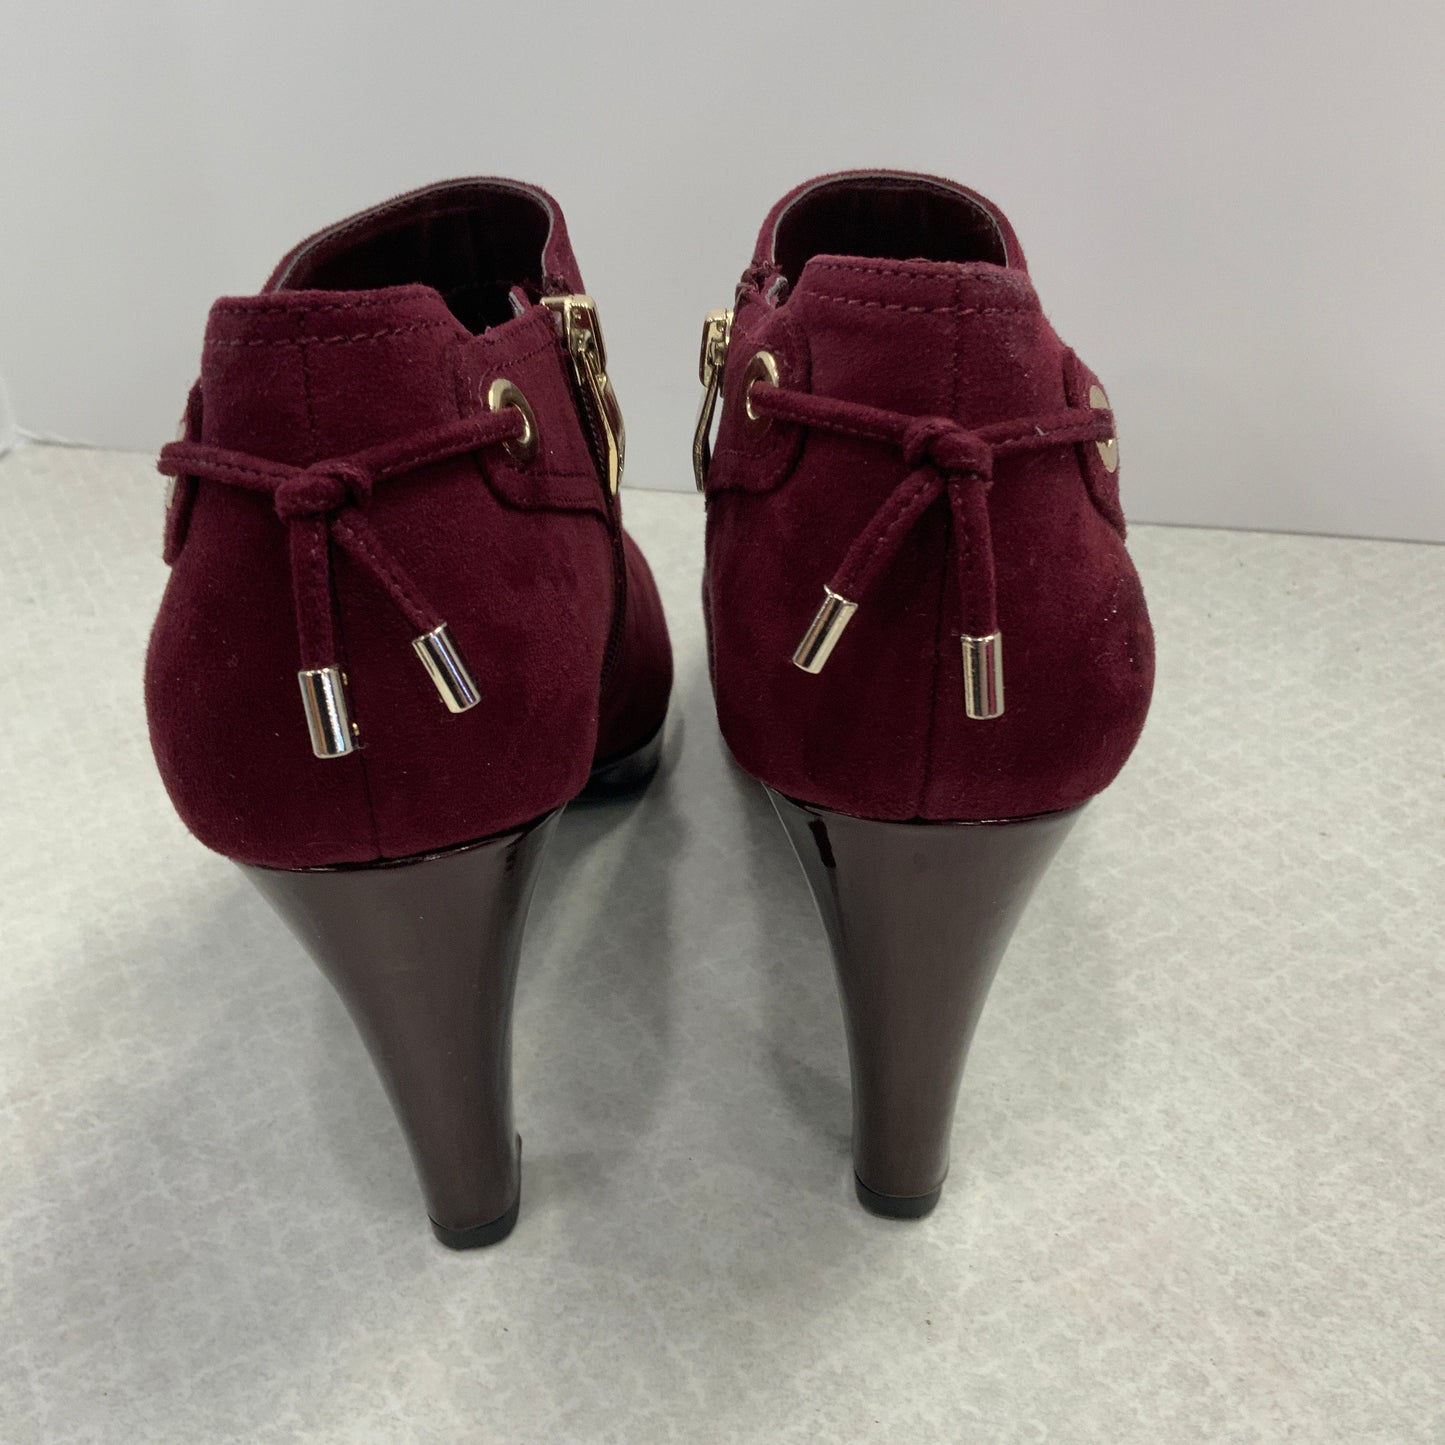 Shoes Heels Stiletto By Liz Claiborne  Size: 8